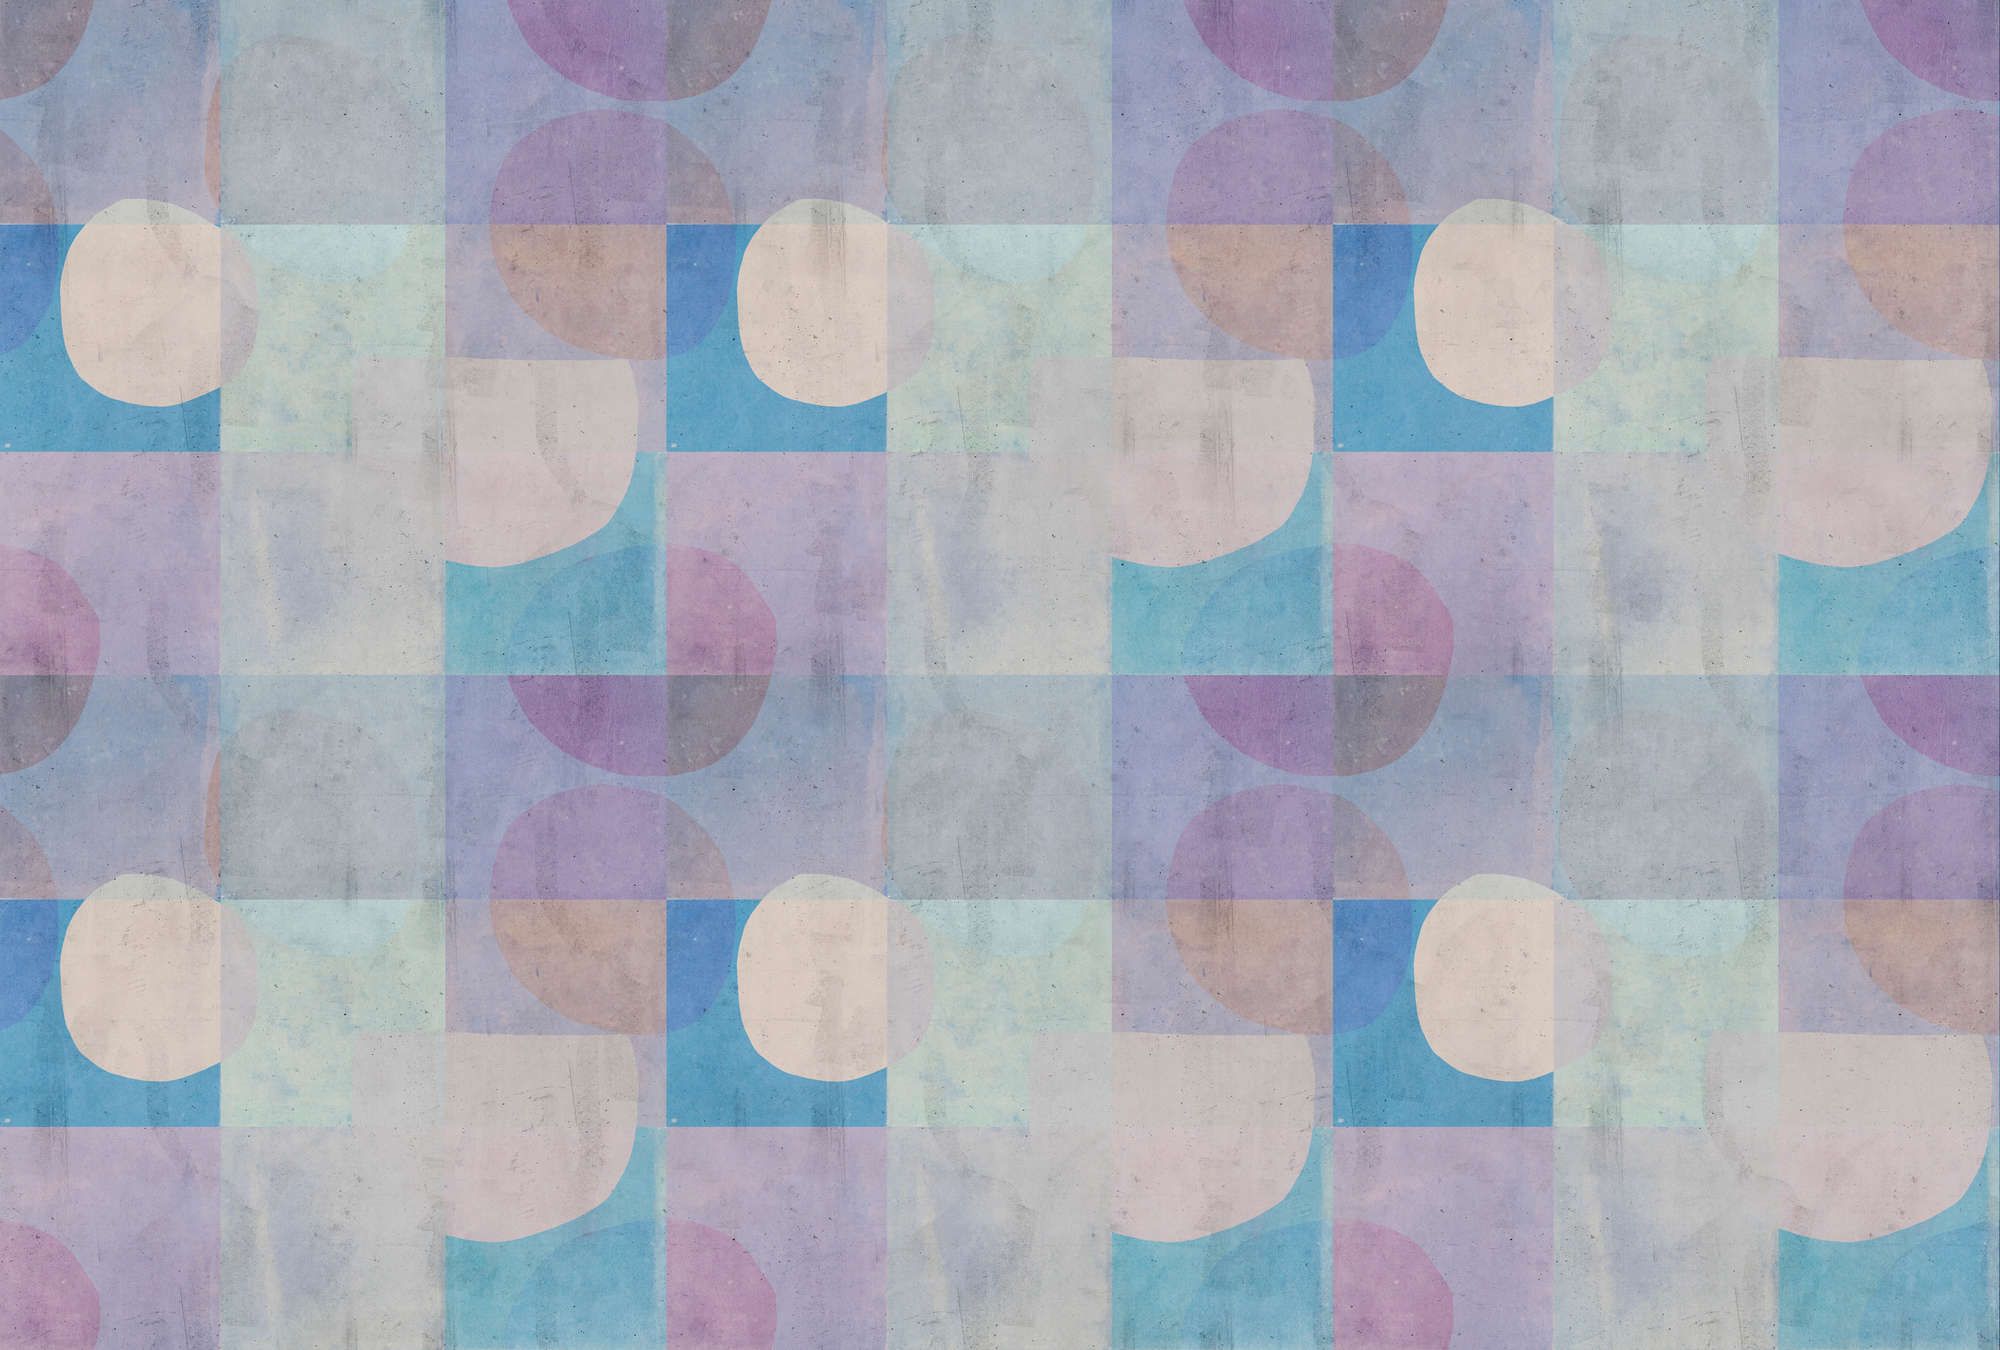             Papel pintado fotográfico »elija 2« - motivo retro con aspecto de hormigón - azul, violeta | tejido sin tejer liso, mate
        